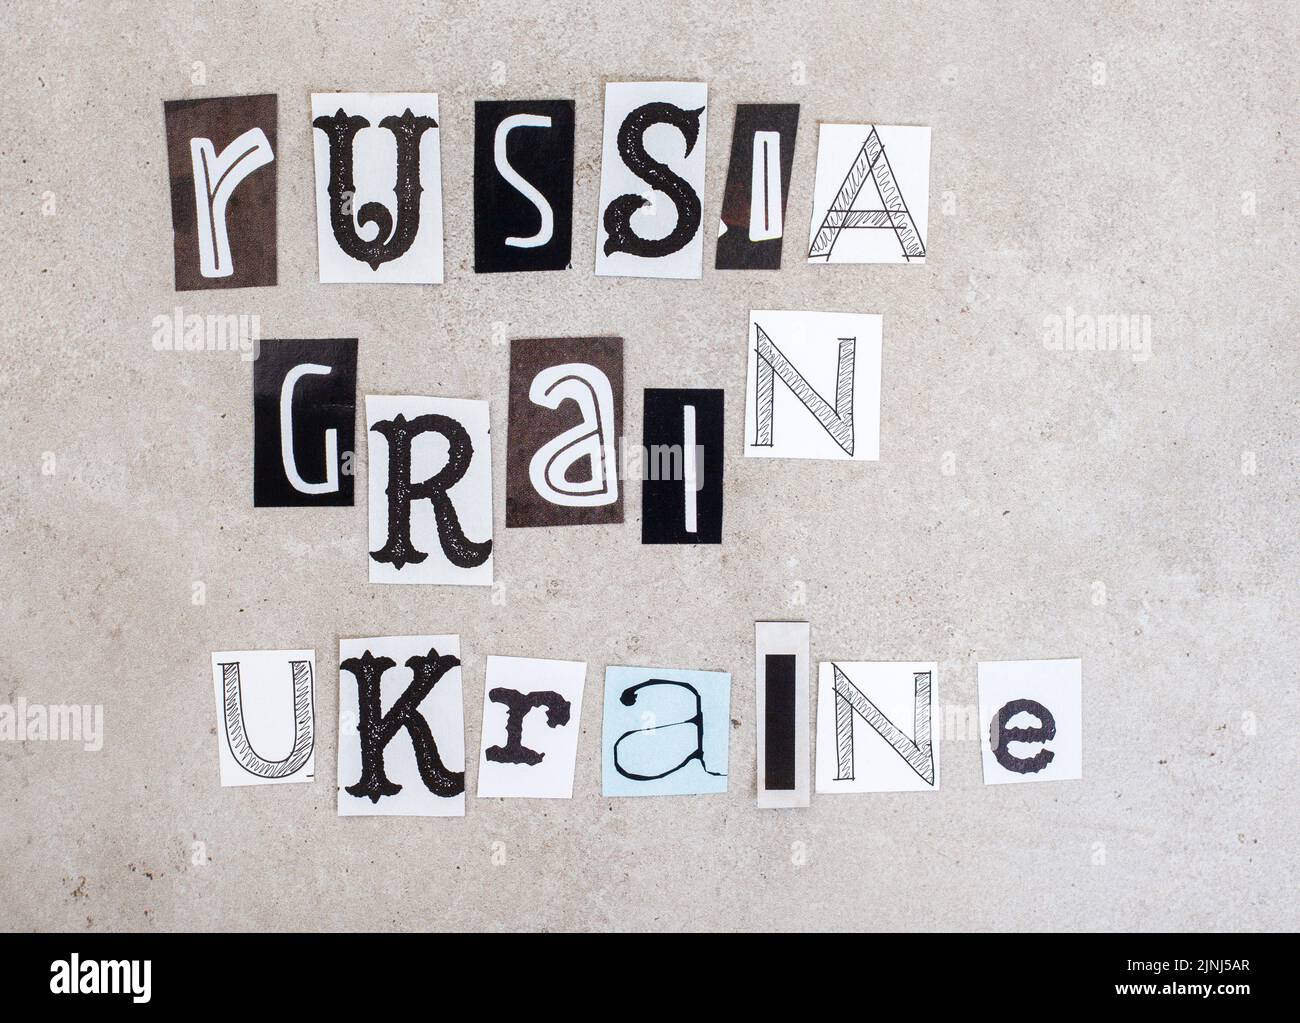 Russia, Ucraina e guerra, questioni sociali che lo circondano in riviste ritagli in grigio Foto Stock